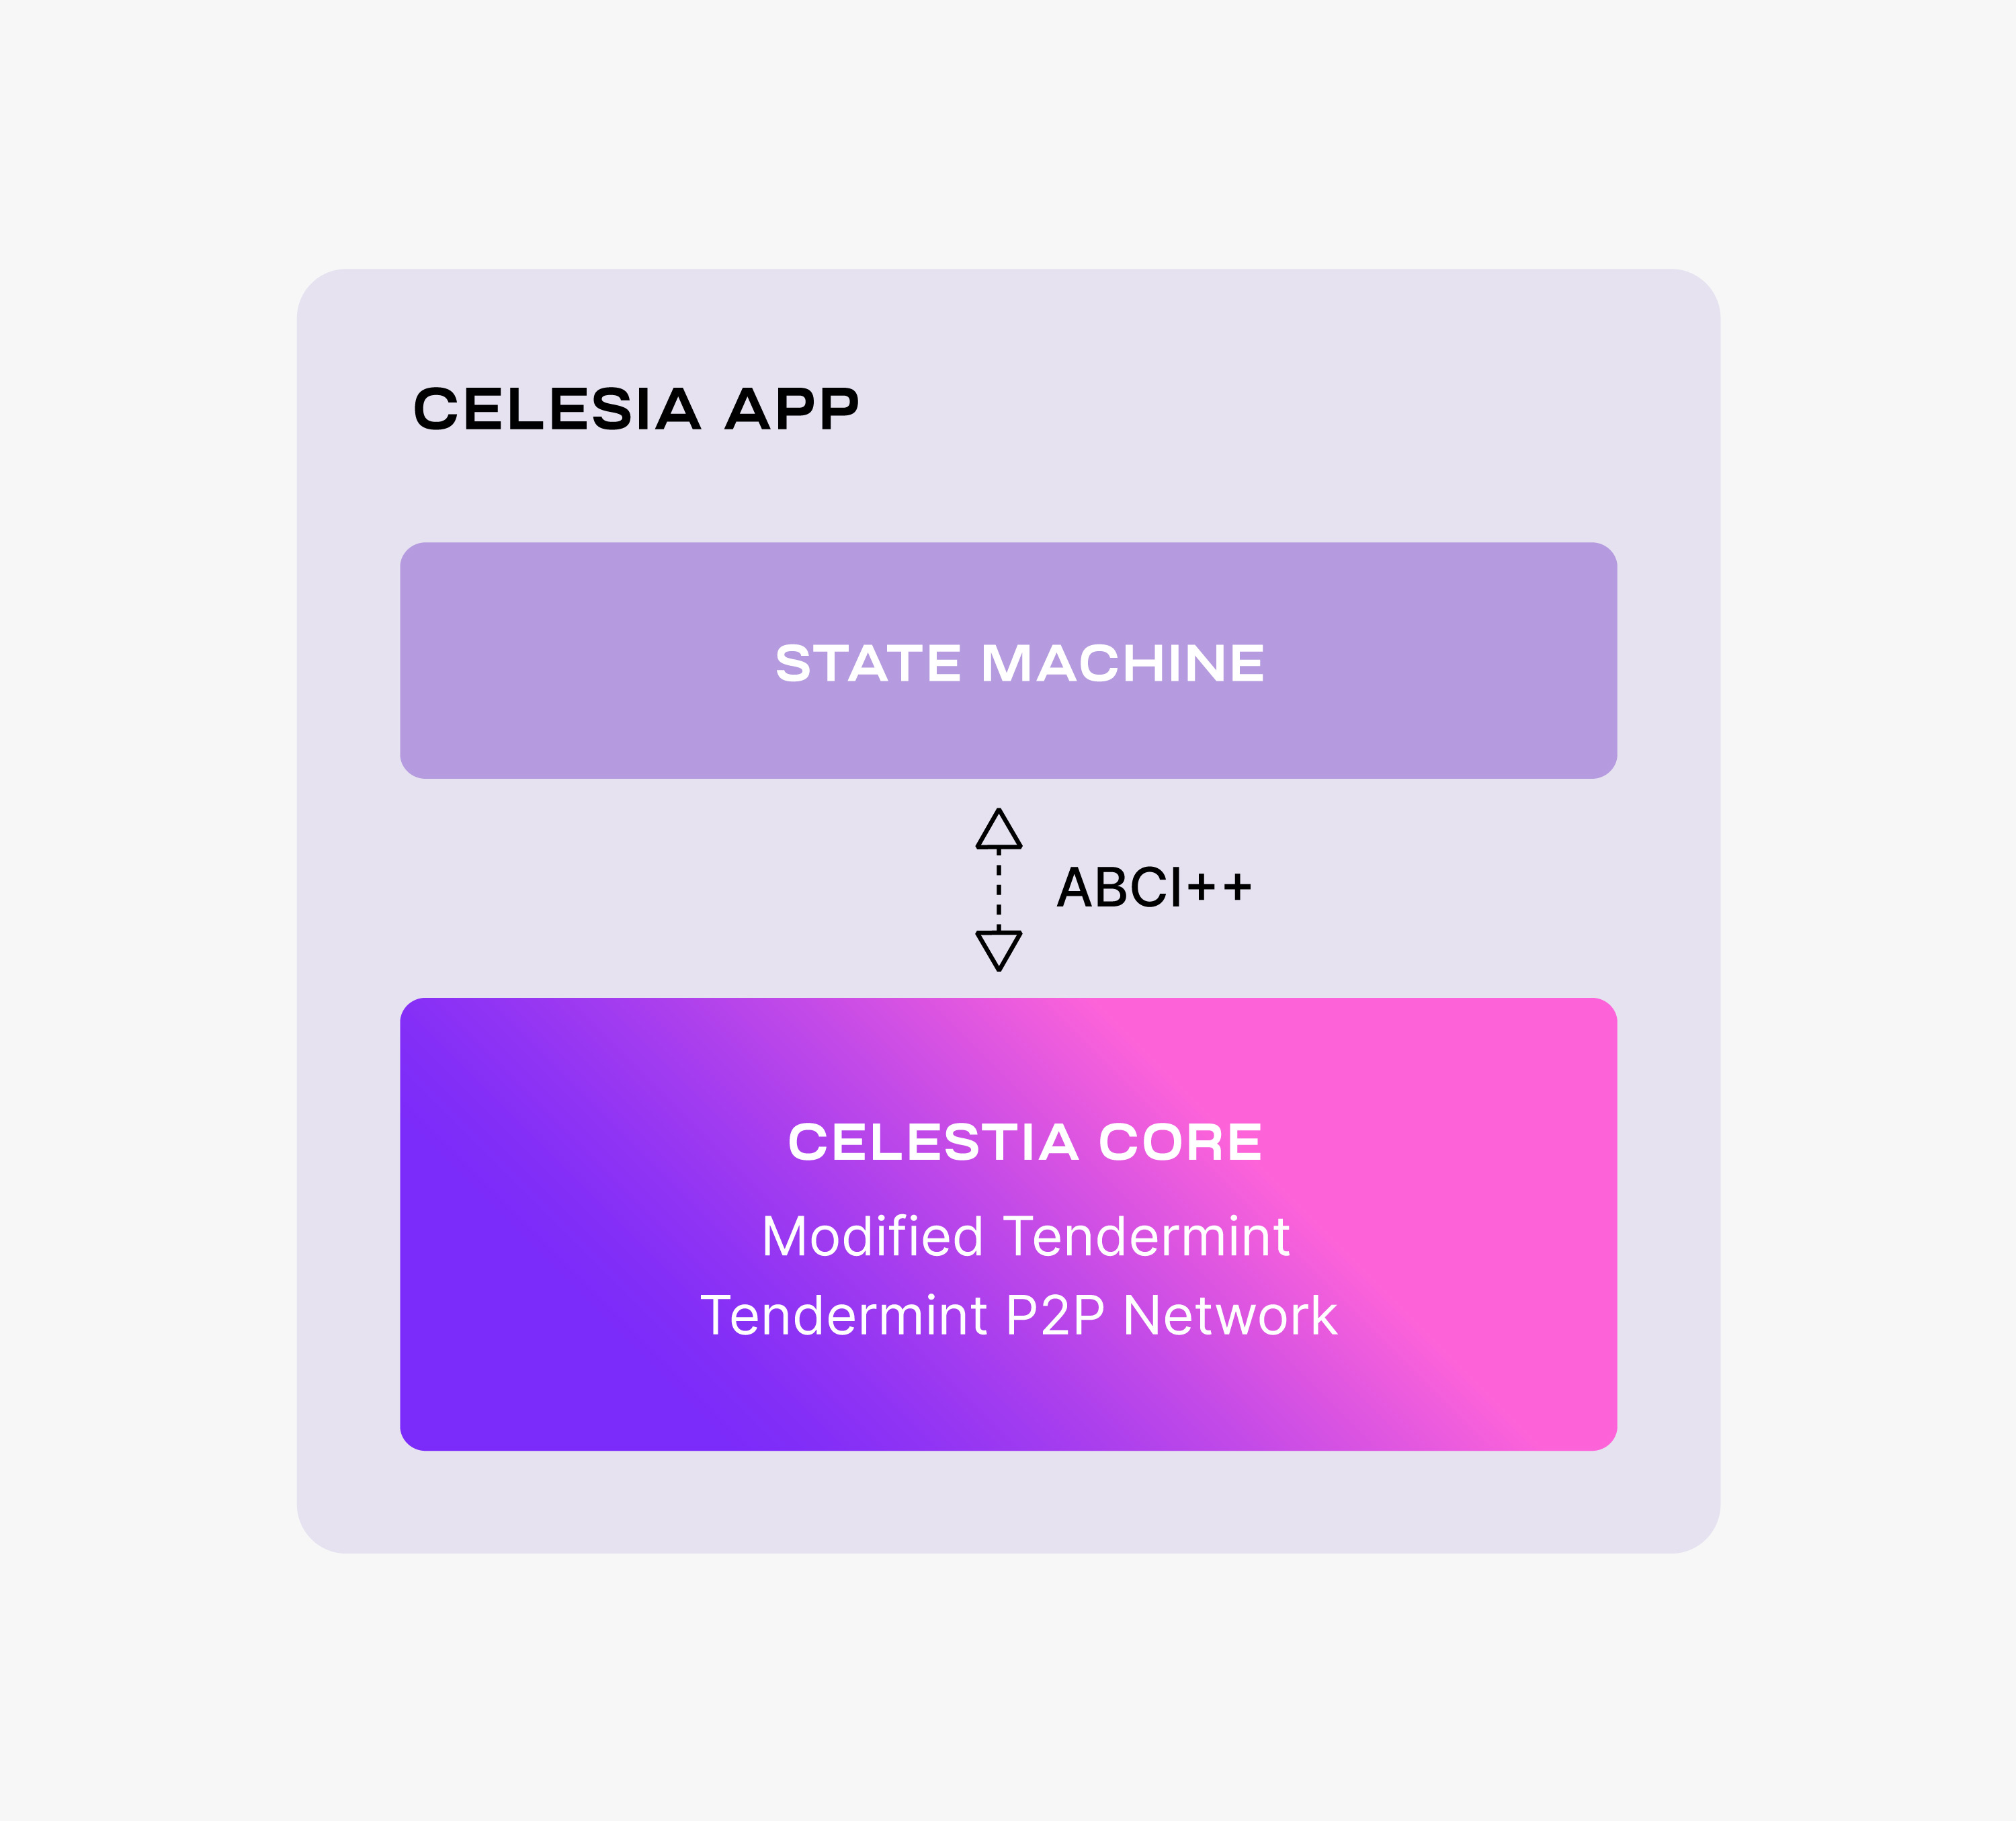 celestia-app-dade9feedac983fdbc5336fc713f2a3a.png